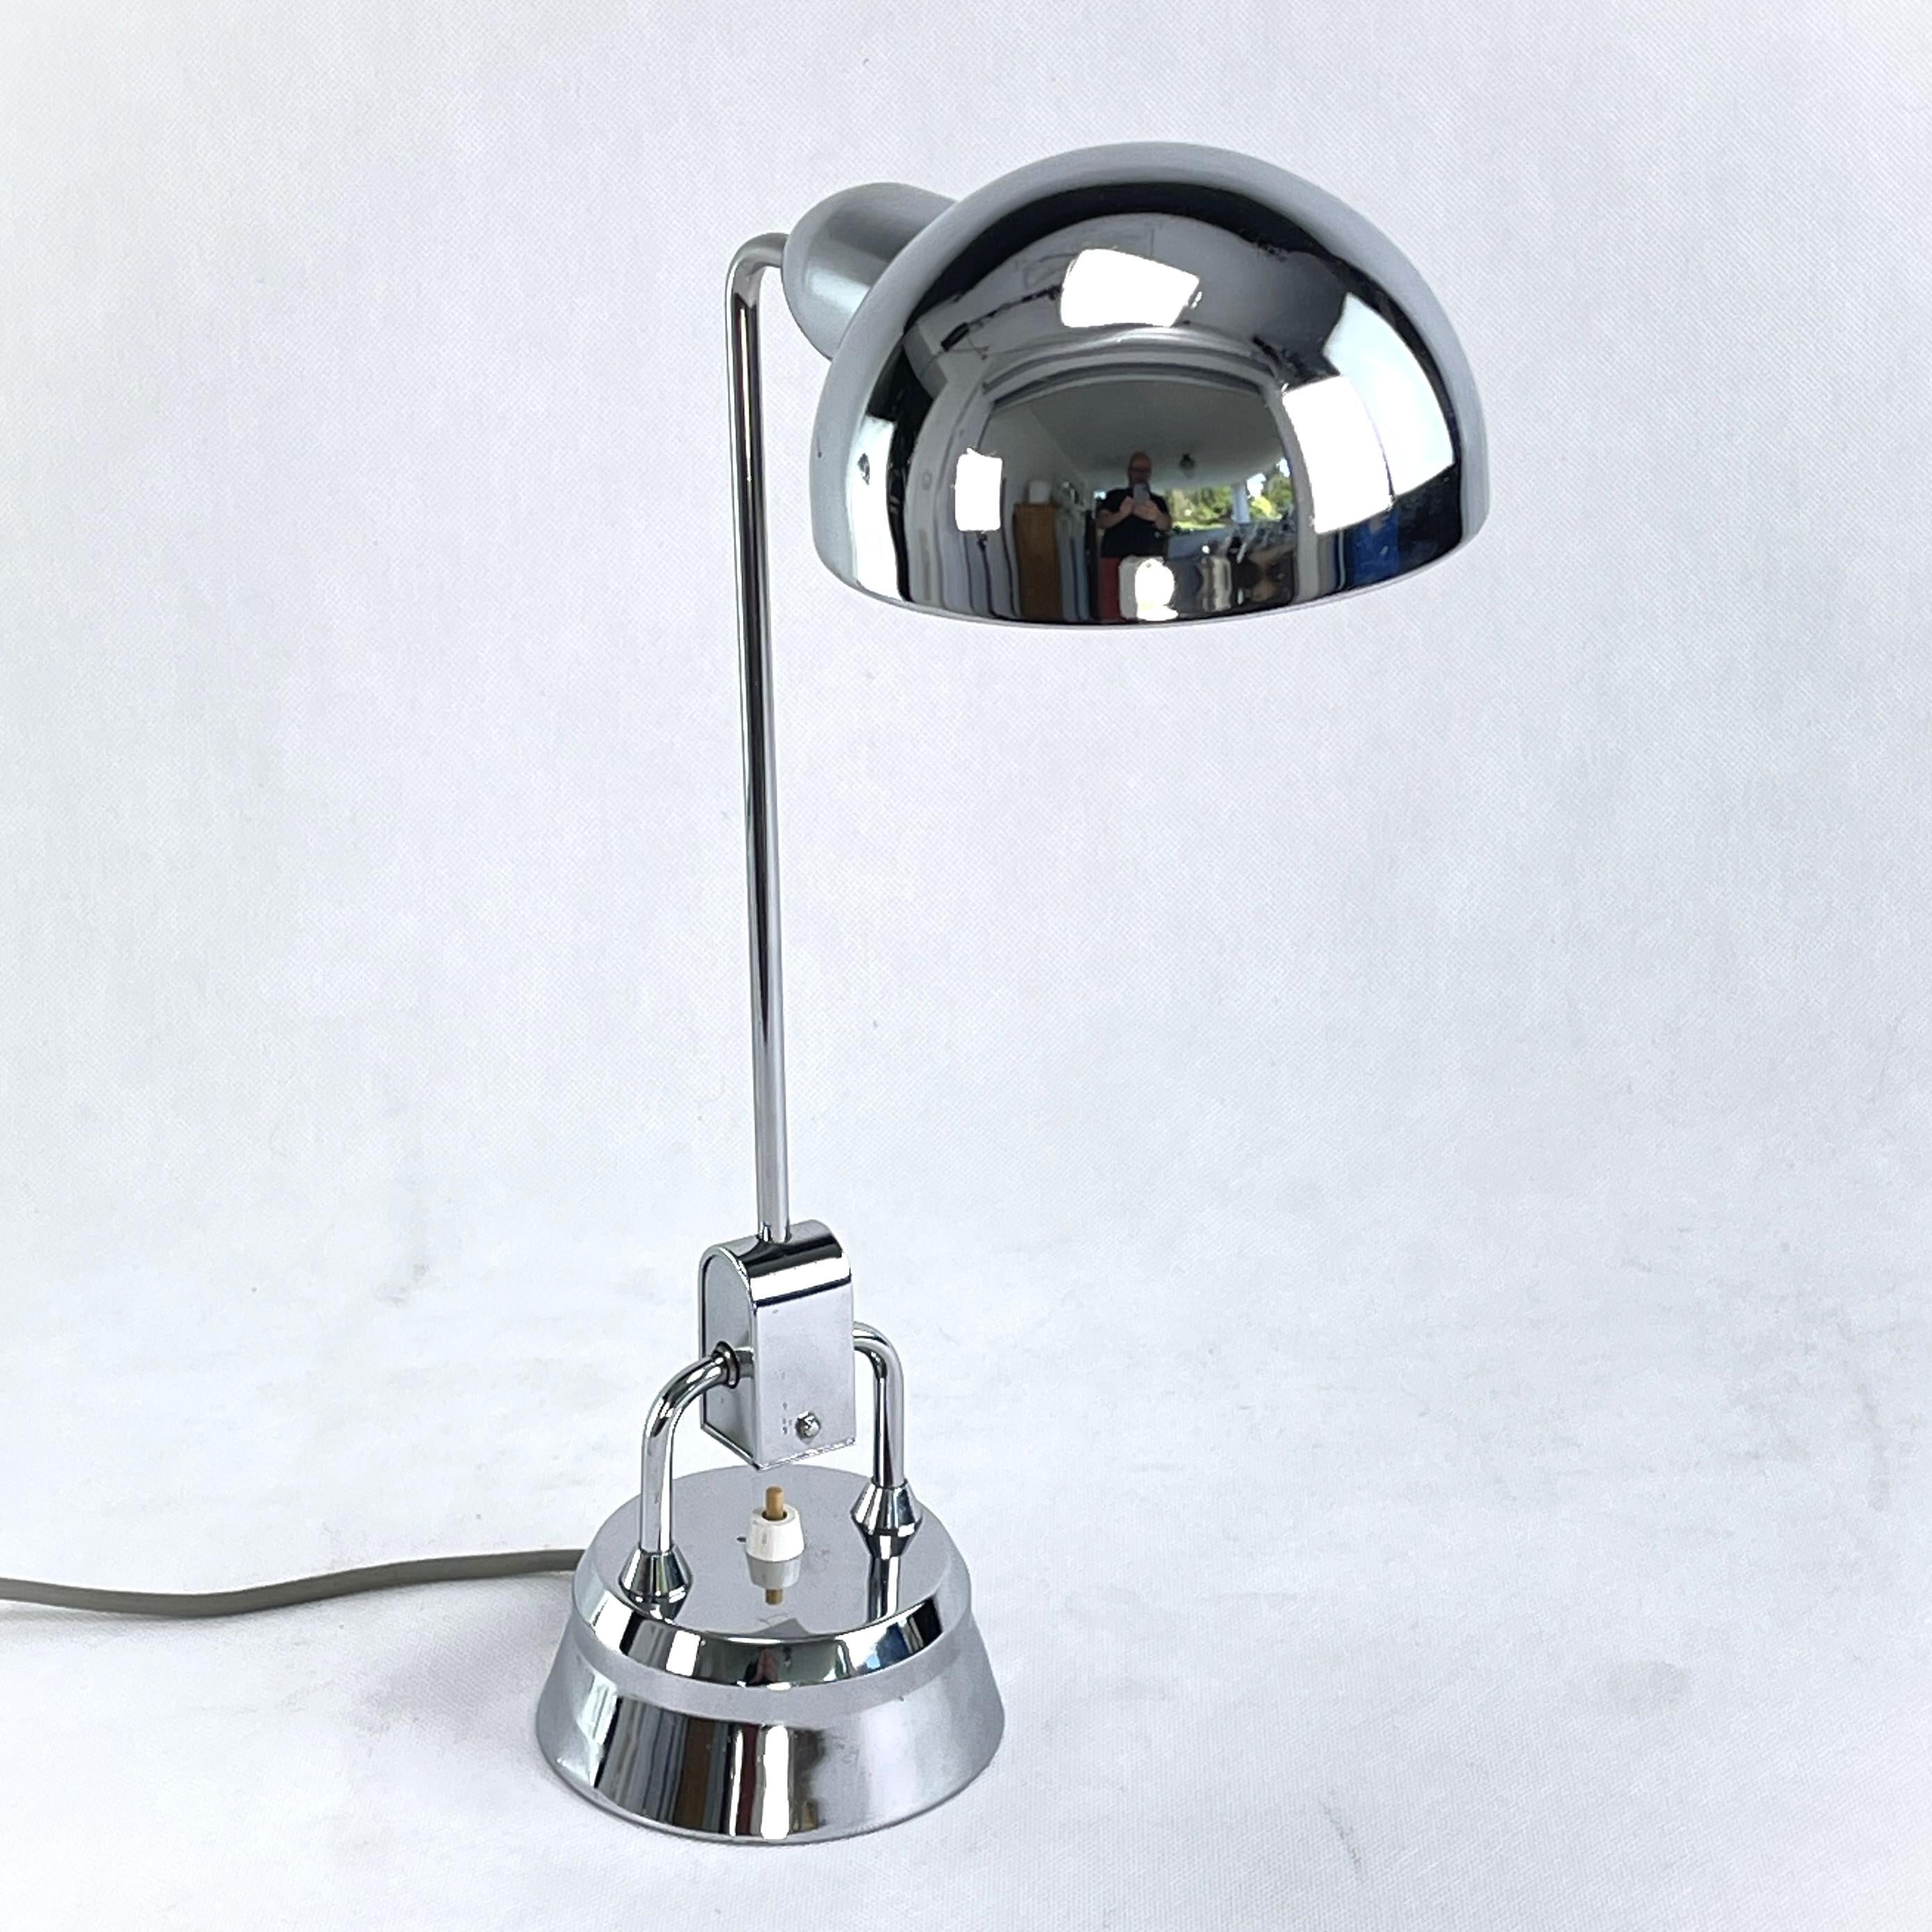 Lampe de table Art Déco de JUMO - années 1930

La lampe de table a été conçue par des Français. La designer Charlotte Perriand pour l'exposition 